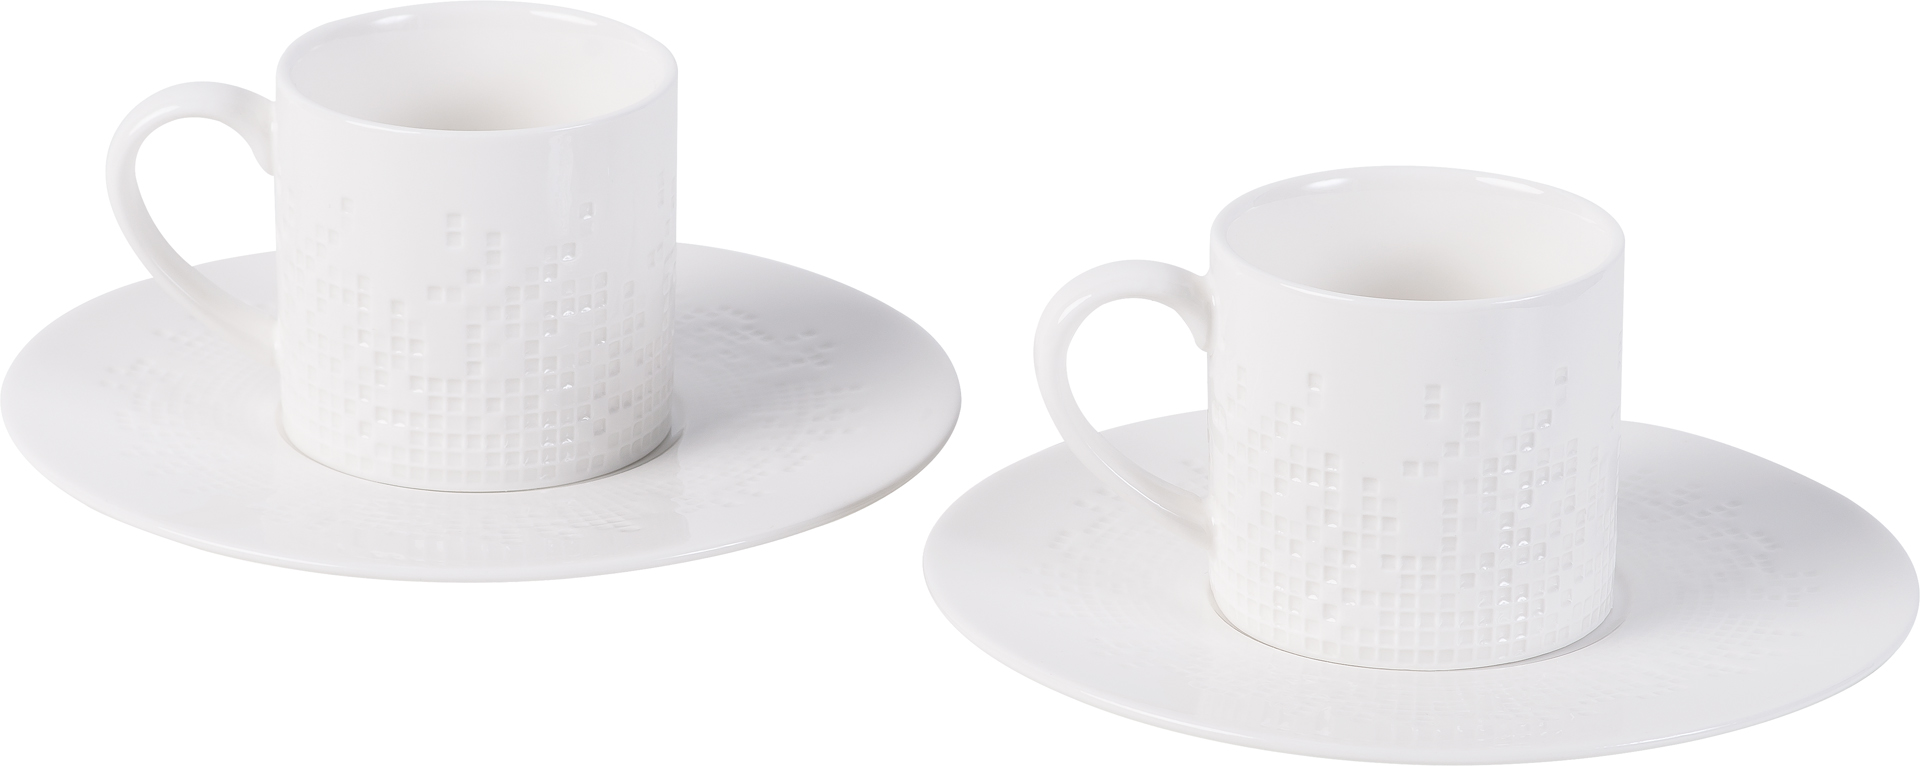 Cup with saucer Motif - set of 2pcs.